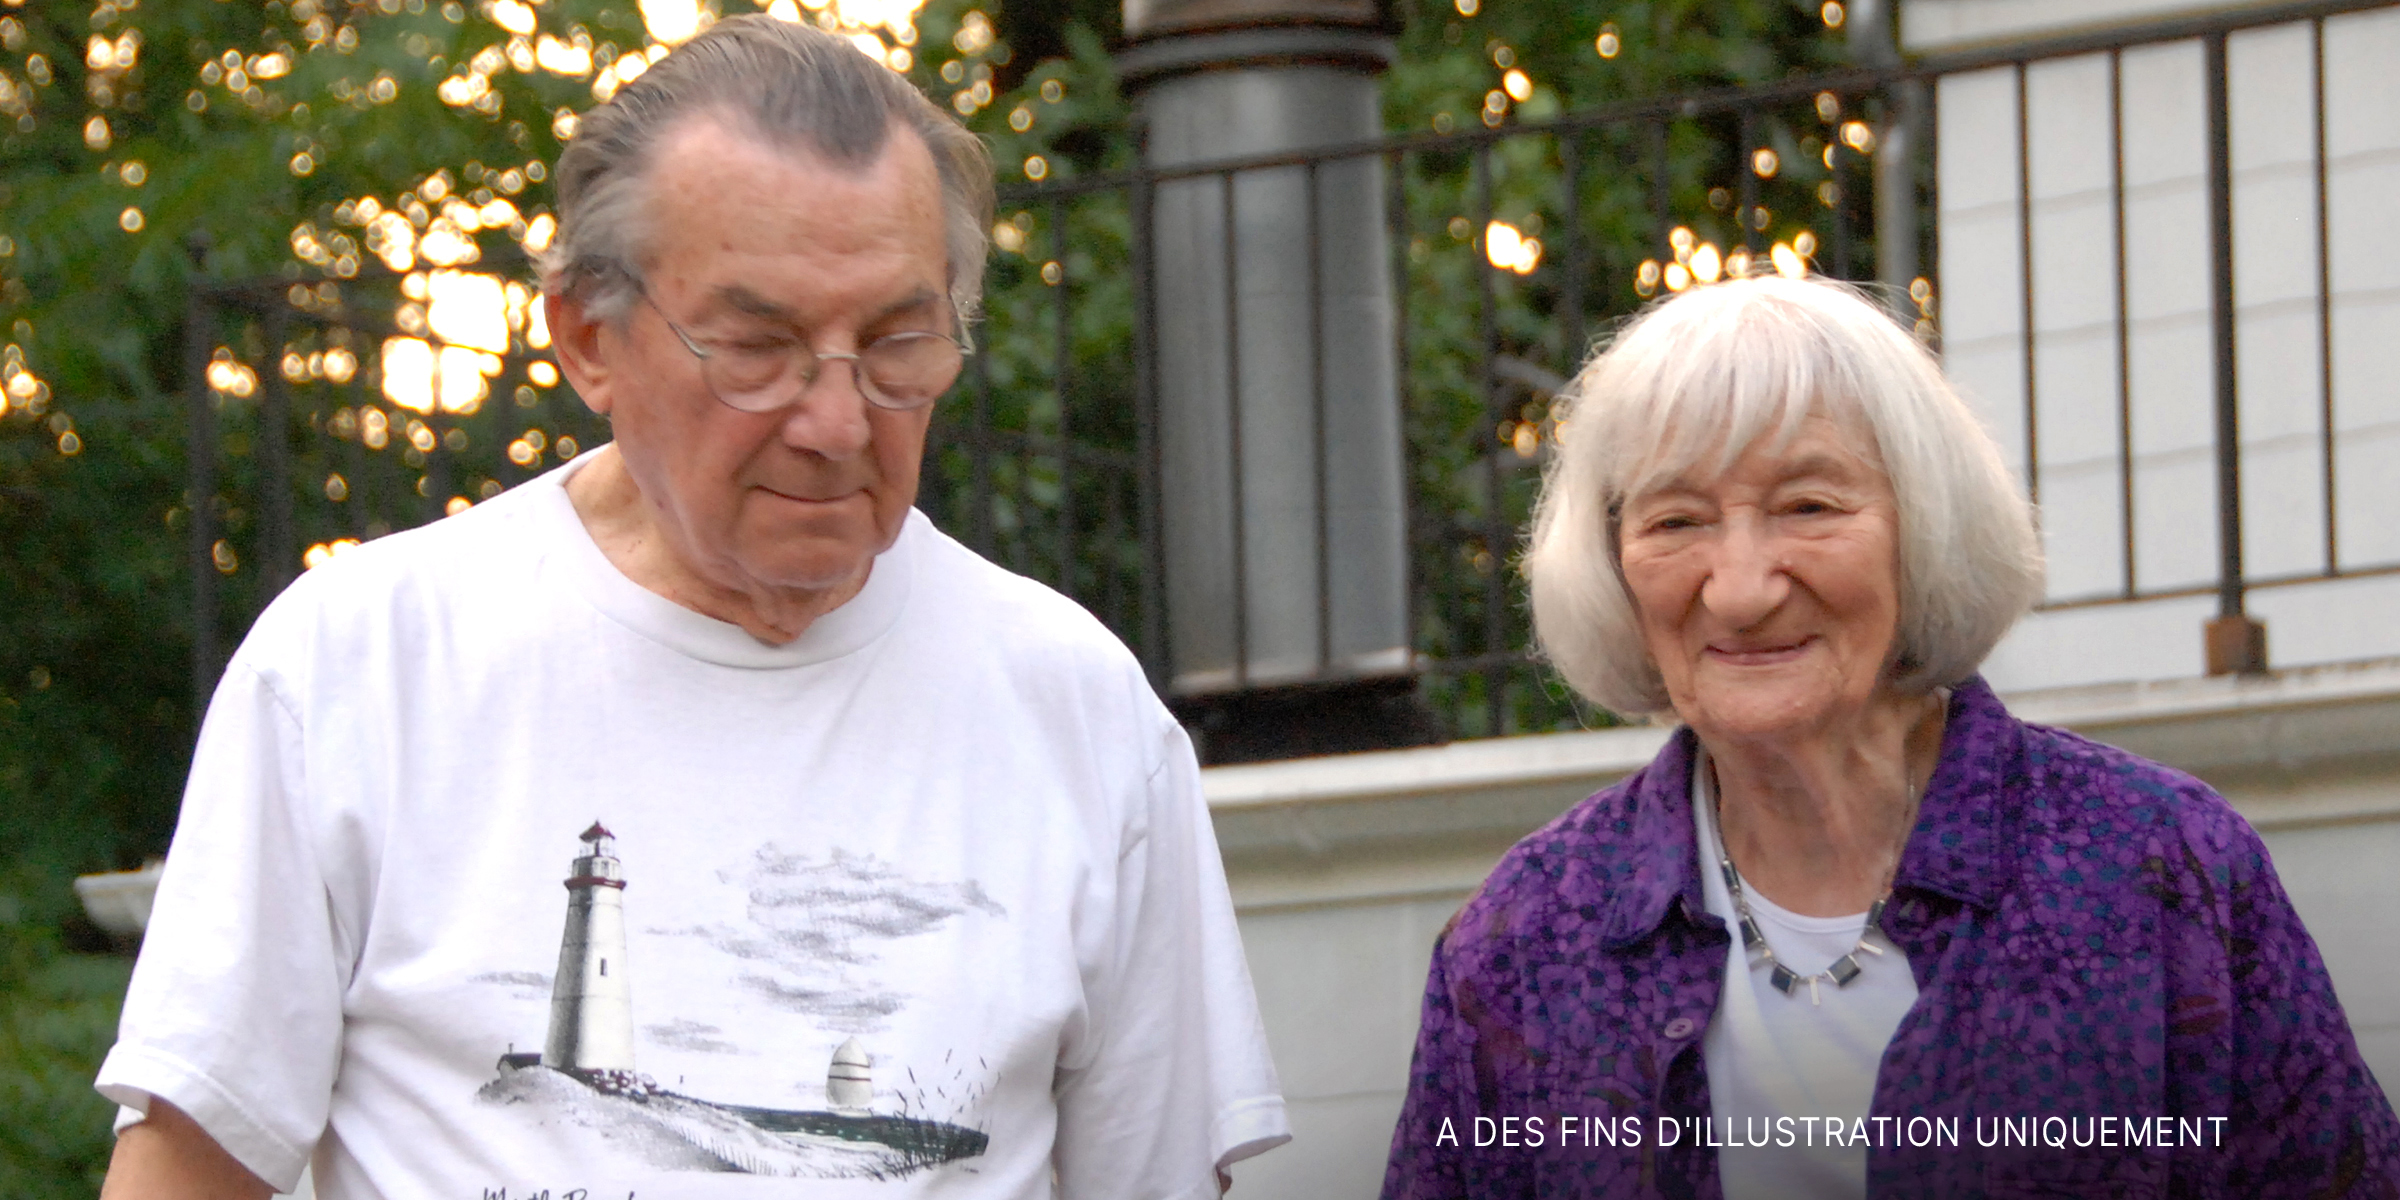 Un couple de personnes âgées | Source : Flickr.com/mikegoren/CC BY 2.0